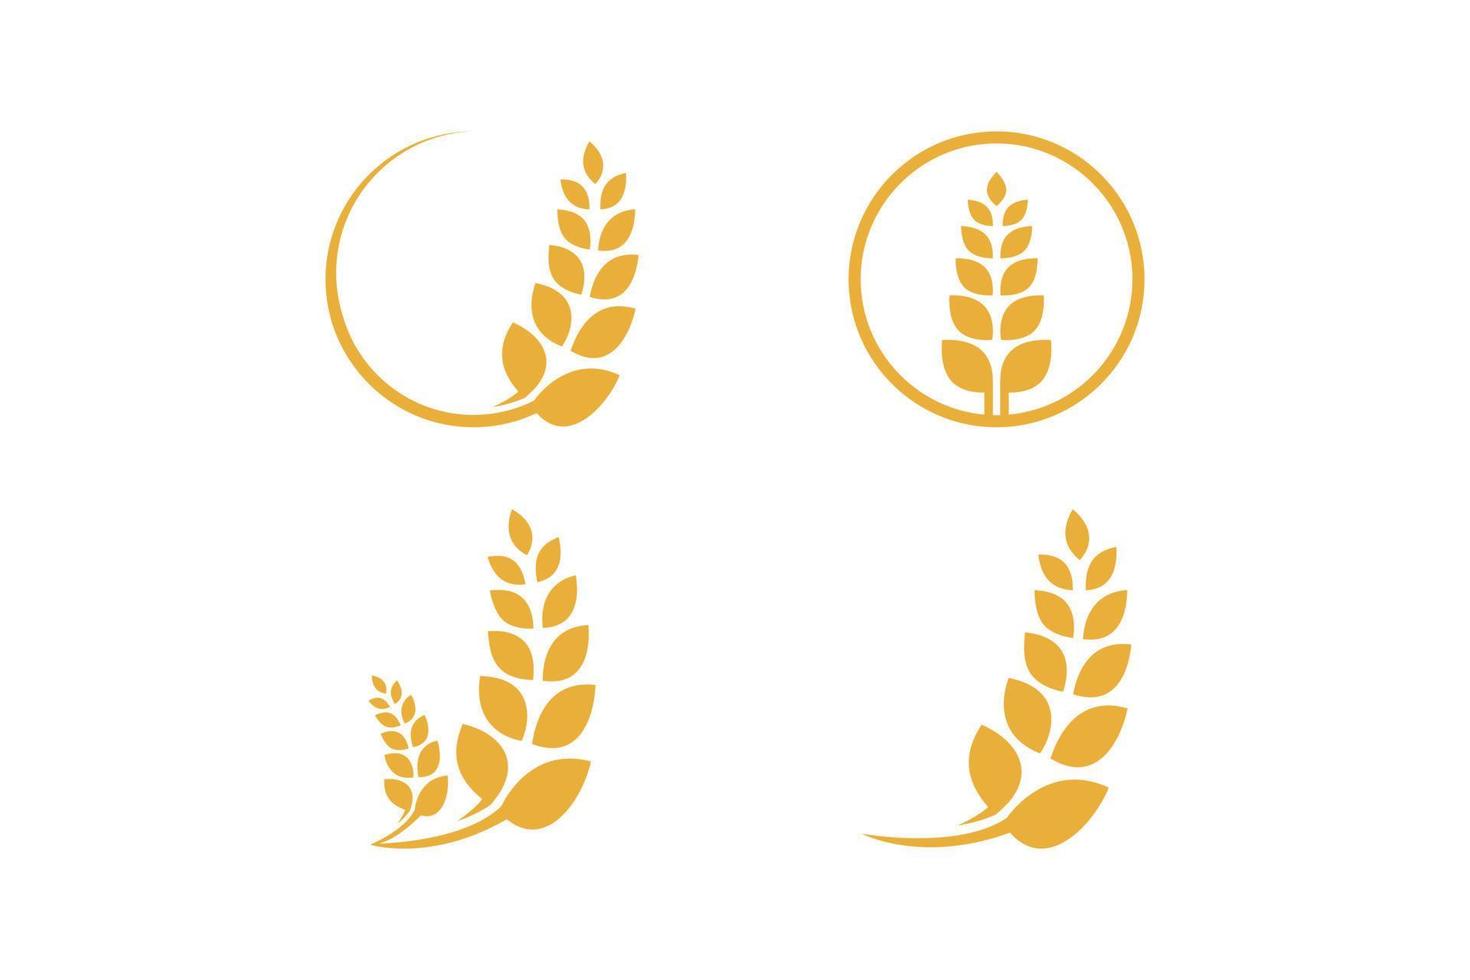 Wheat farming set logo vector design template collection